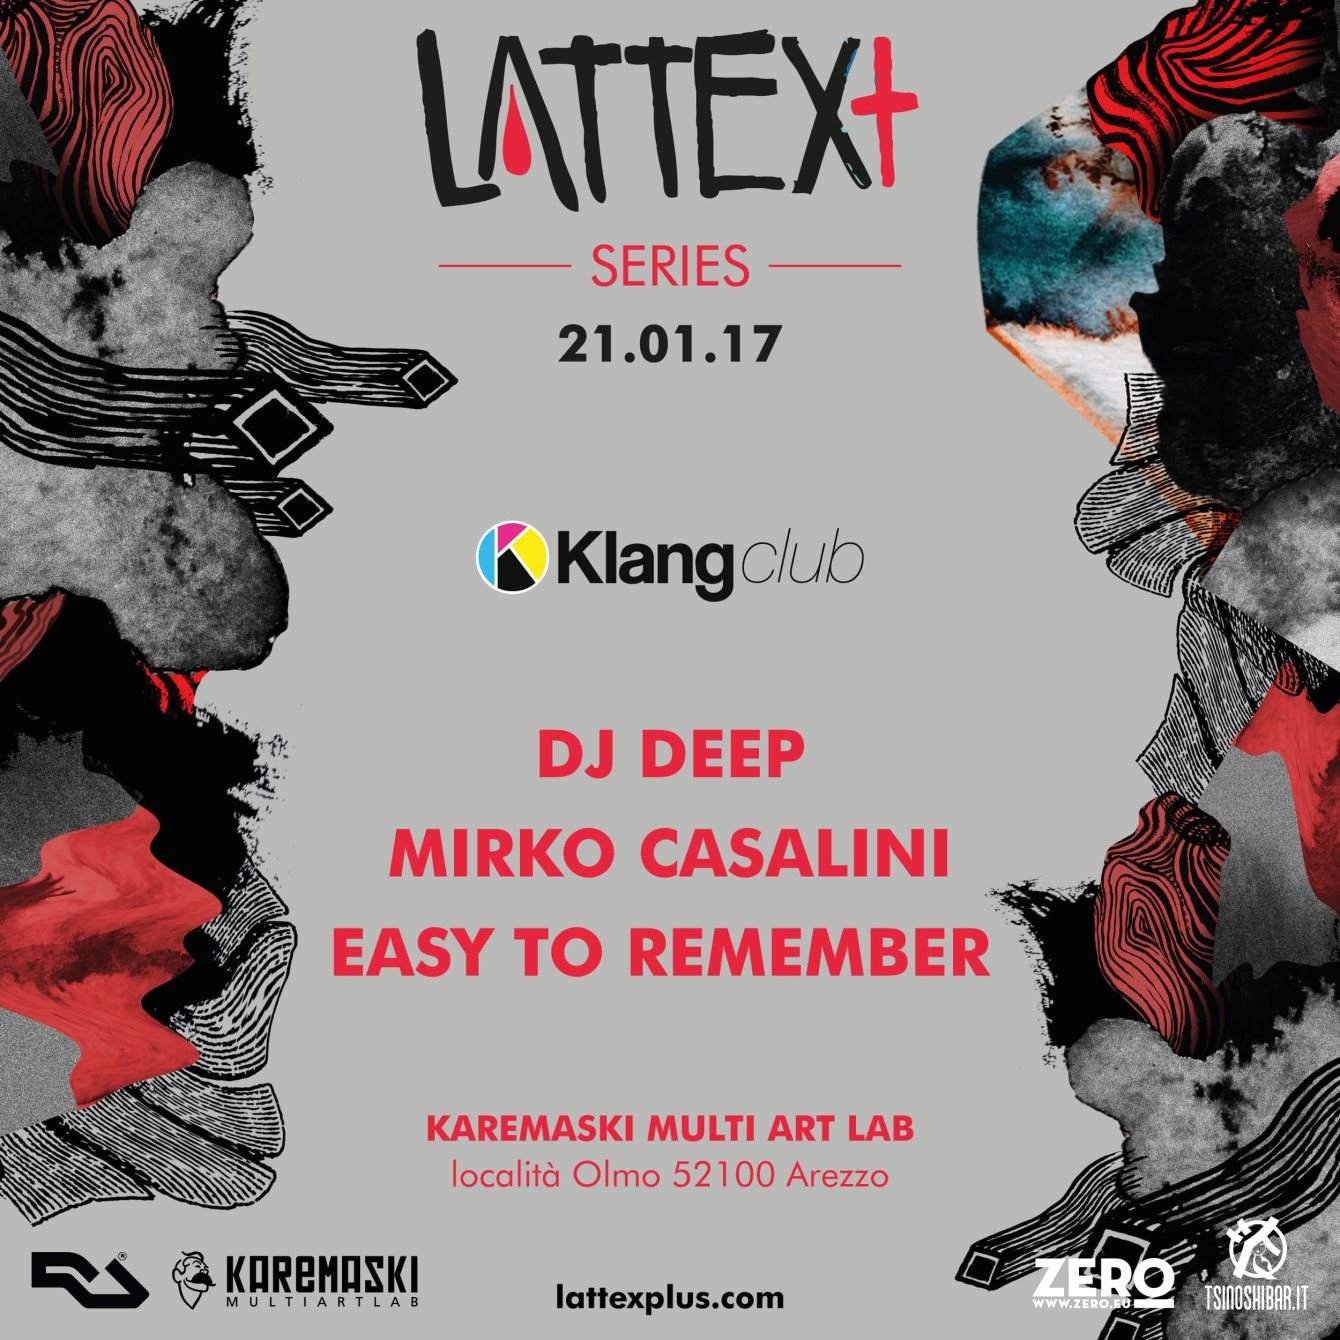 Lattex Series with DJ Deep - Página frontal